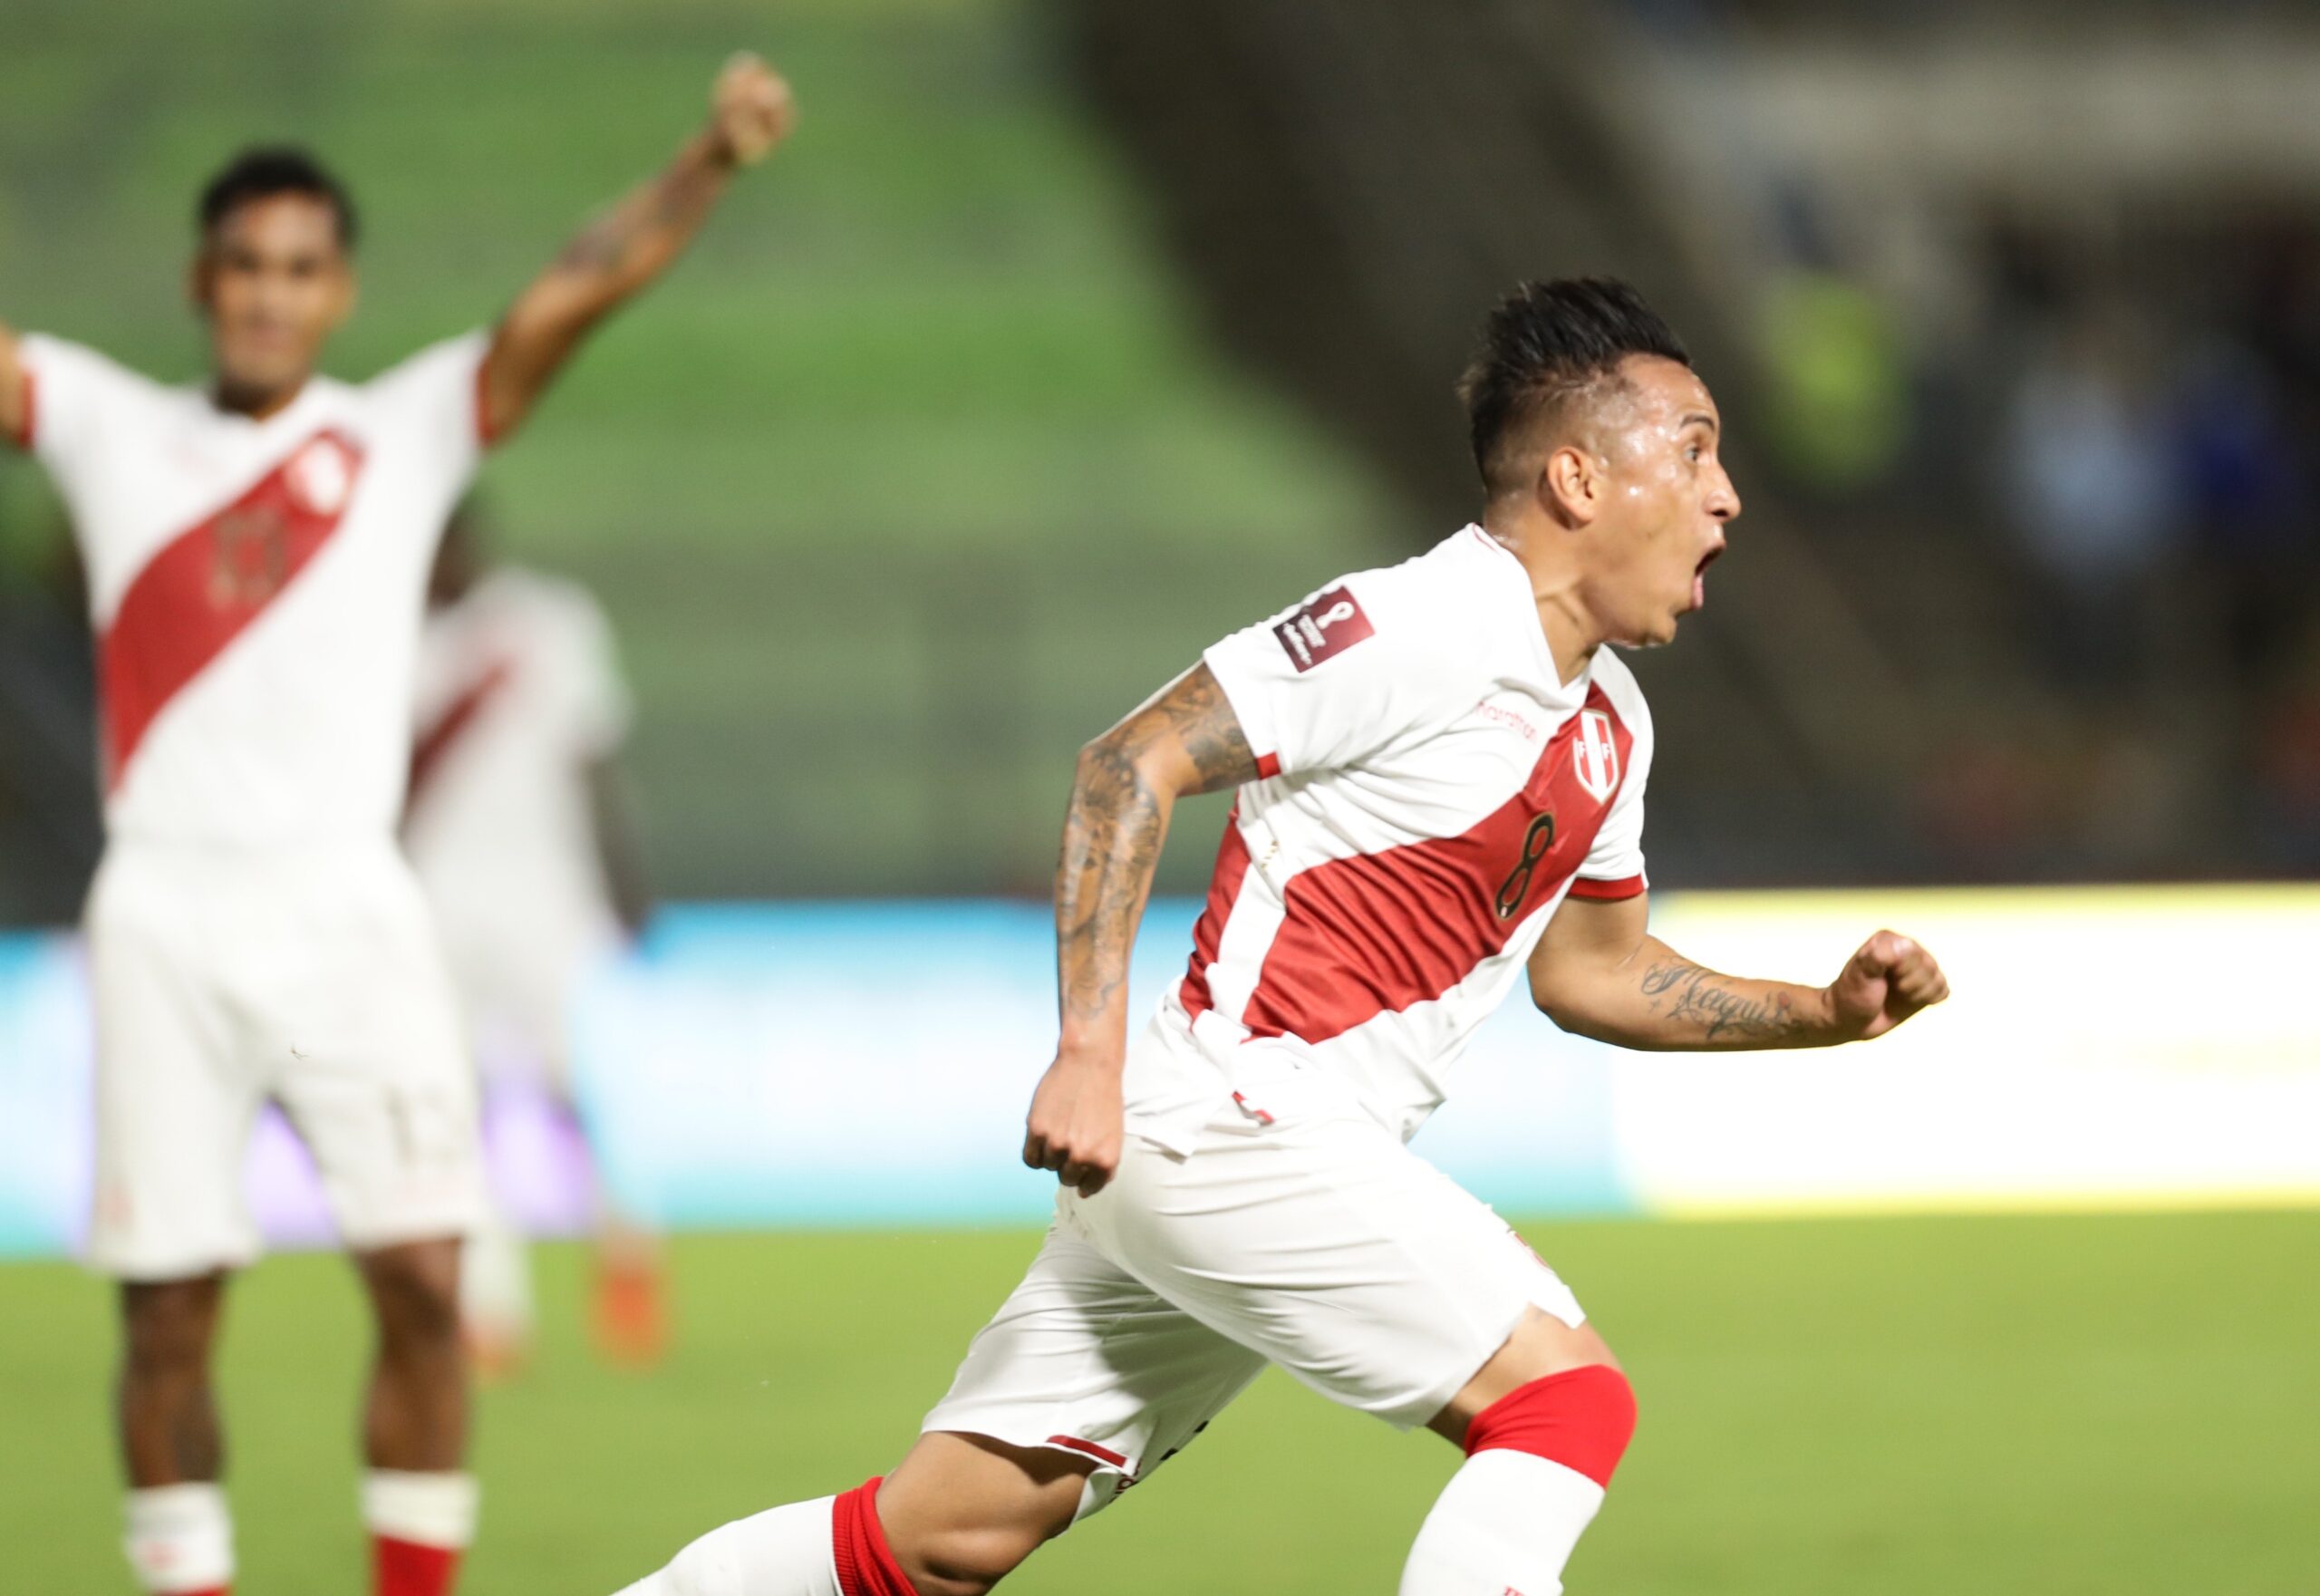 Christian Cueva de Perú celebra un gol hoy, en un partido de las eliminatorias sudamericanas para el Mundial de Catar 2022 entre Venezuela y Perú, en el estadio Olímpico UCV, en Caracas (Venezuela). EFE/ Rayner Peña